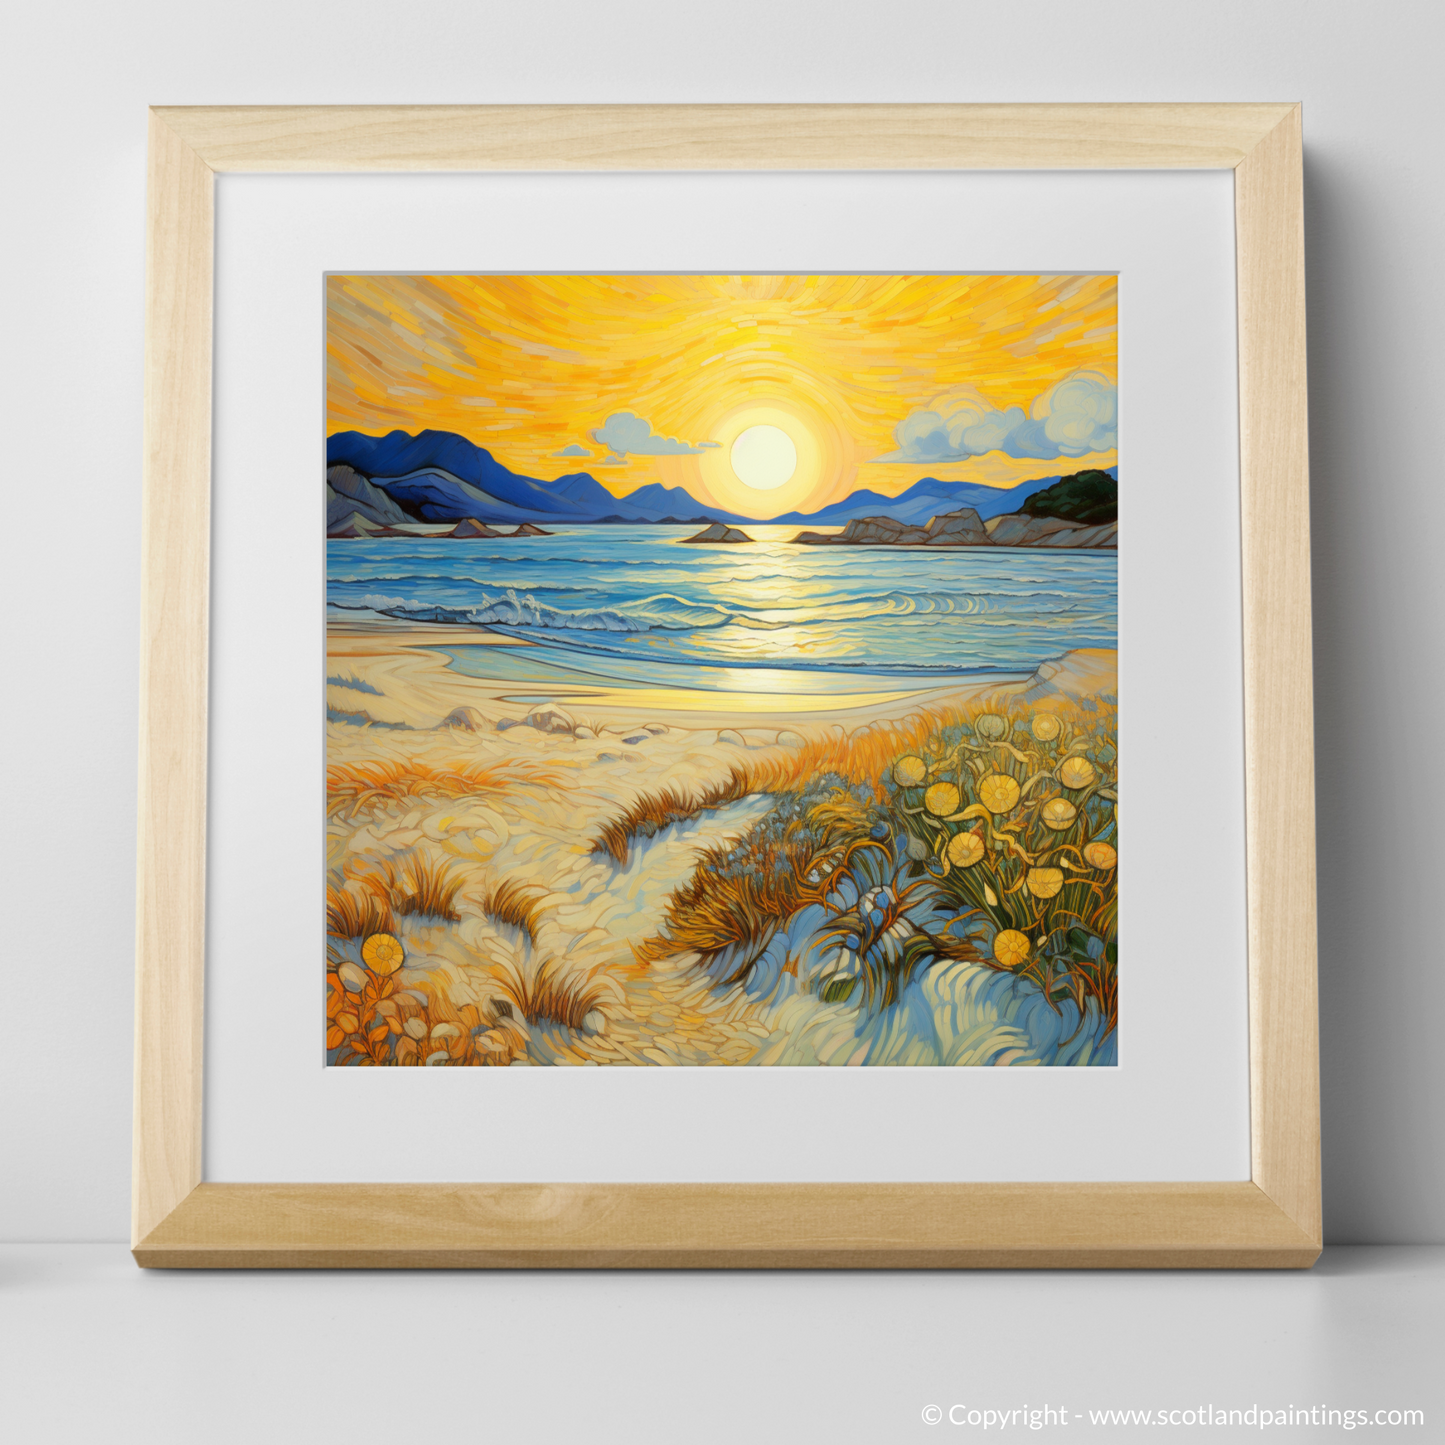 Sunset Serenade at Silver Sands of Morar